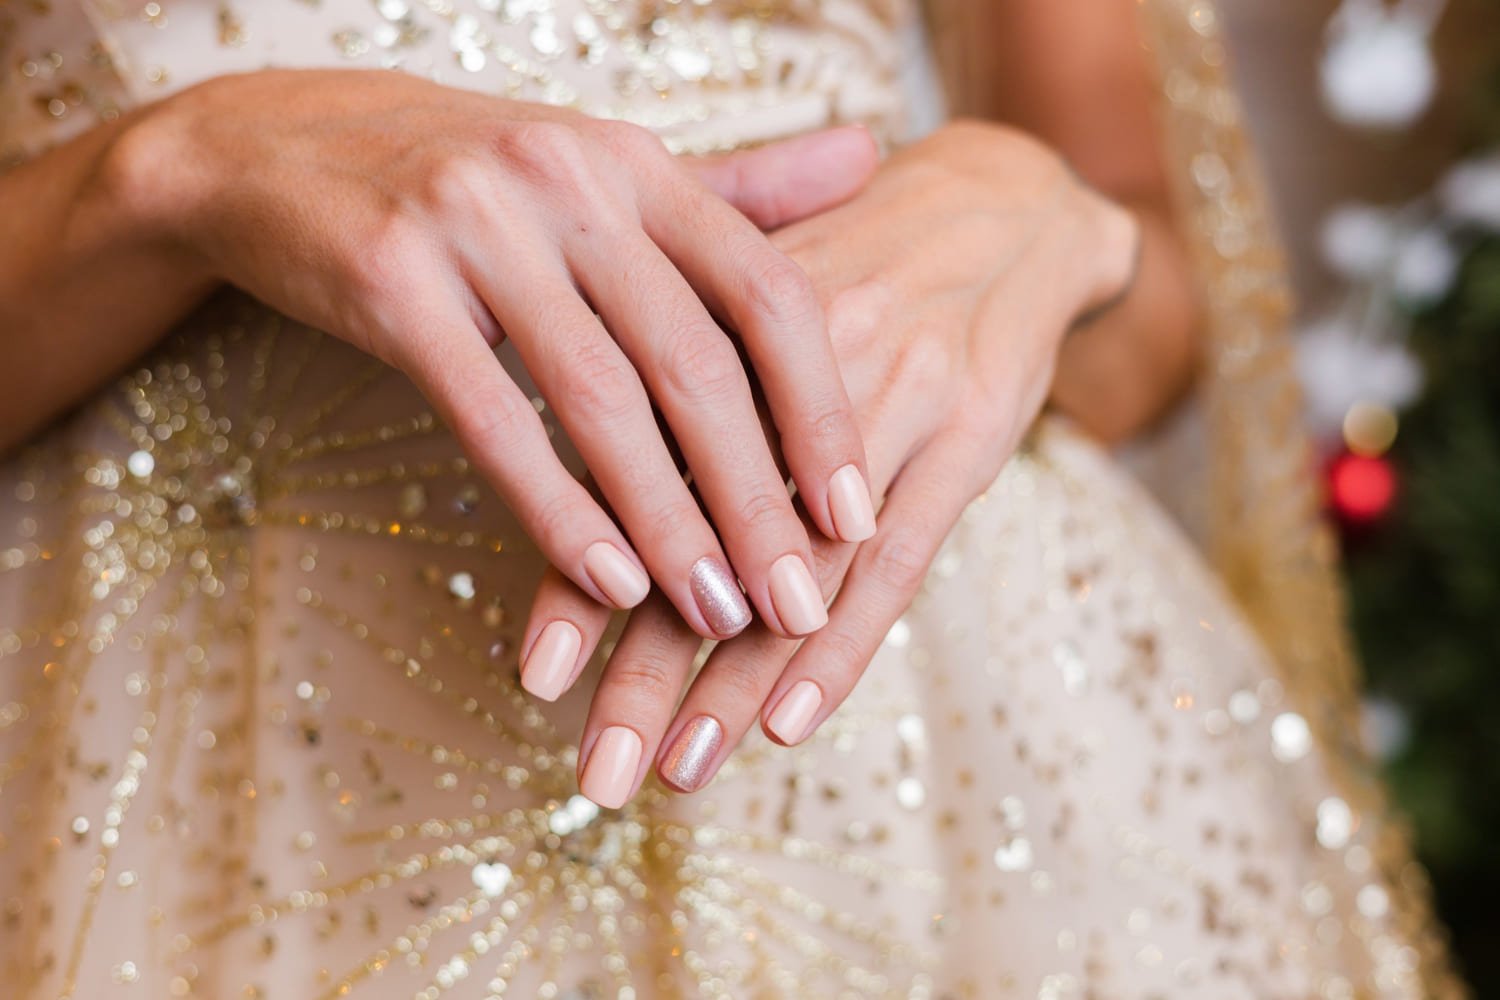 Mulher com as mãos sobrepostas. Suas unhas estão pintadas de uma cor clara enquanto apenas a do dedo anelar segue um tom mais metálico